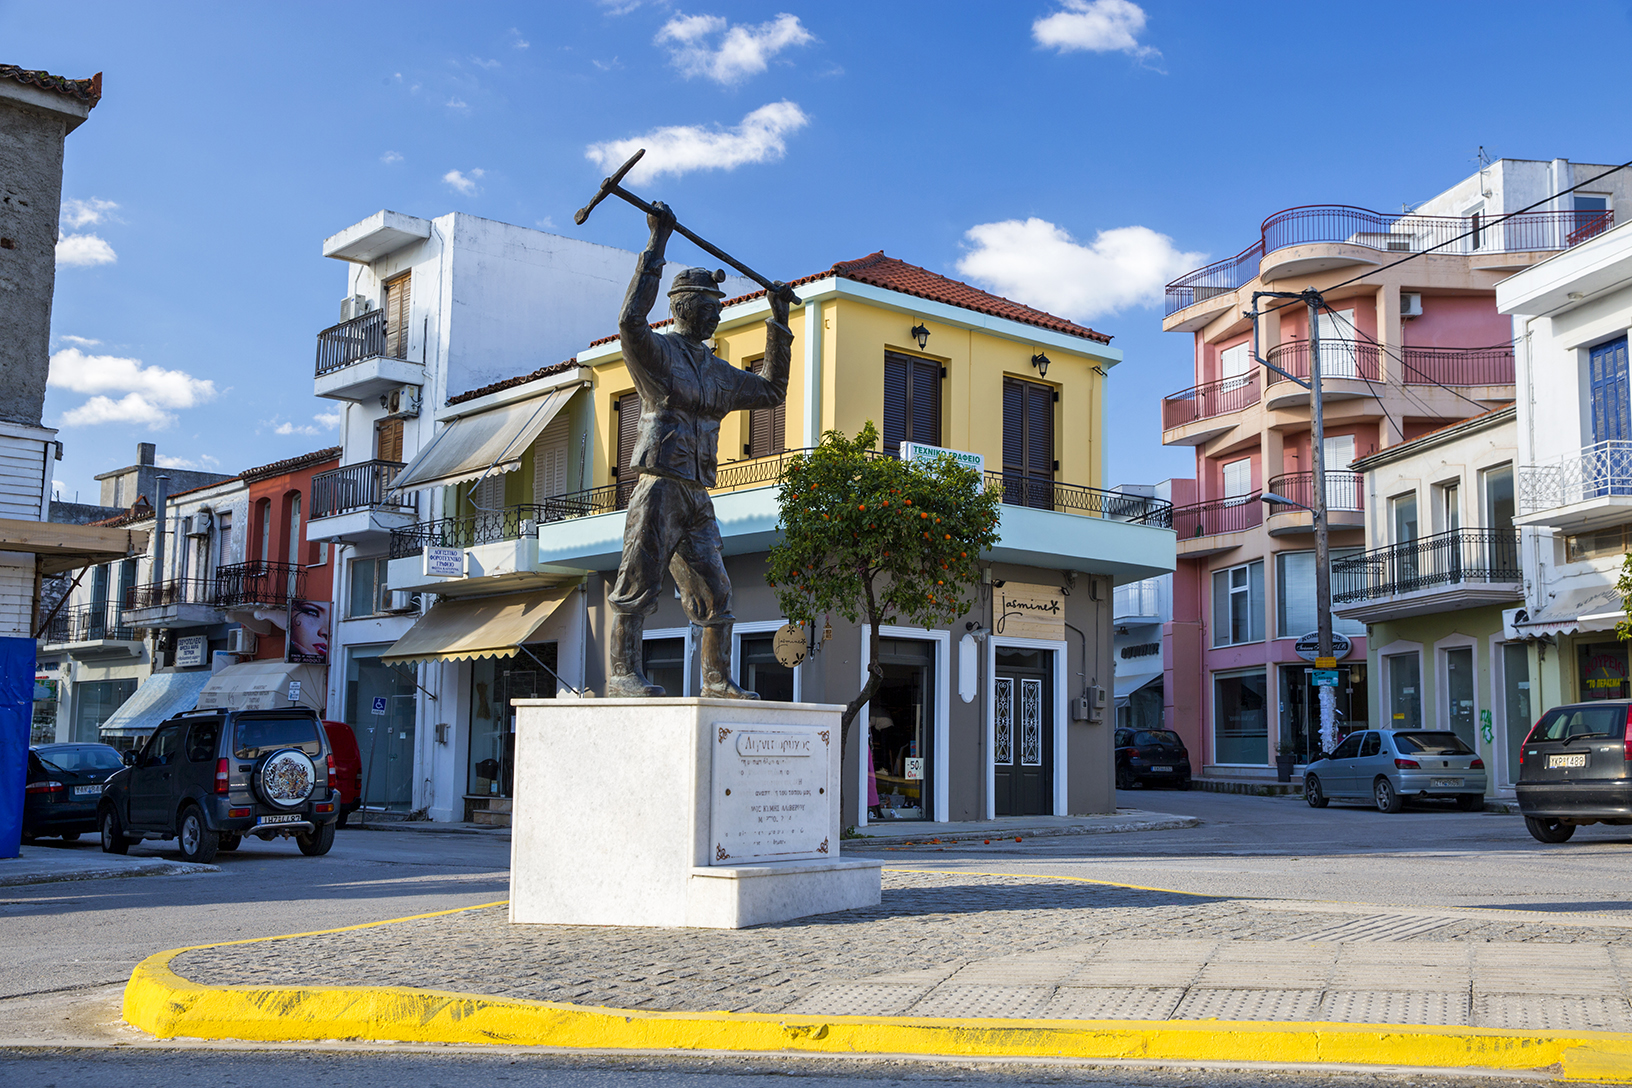 Άγαλμα λιγνιτωρύχου, Αλιβέρι. Φωτογραφία: ©Βασίλης Συκάς, για τον Δήμο Κύμης-Αλιβερίου